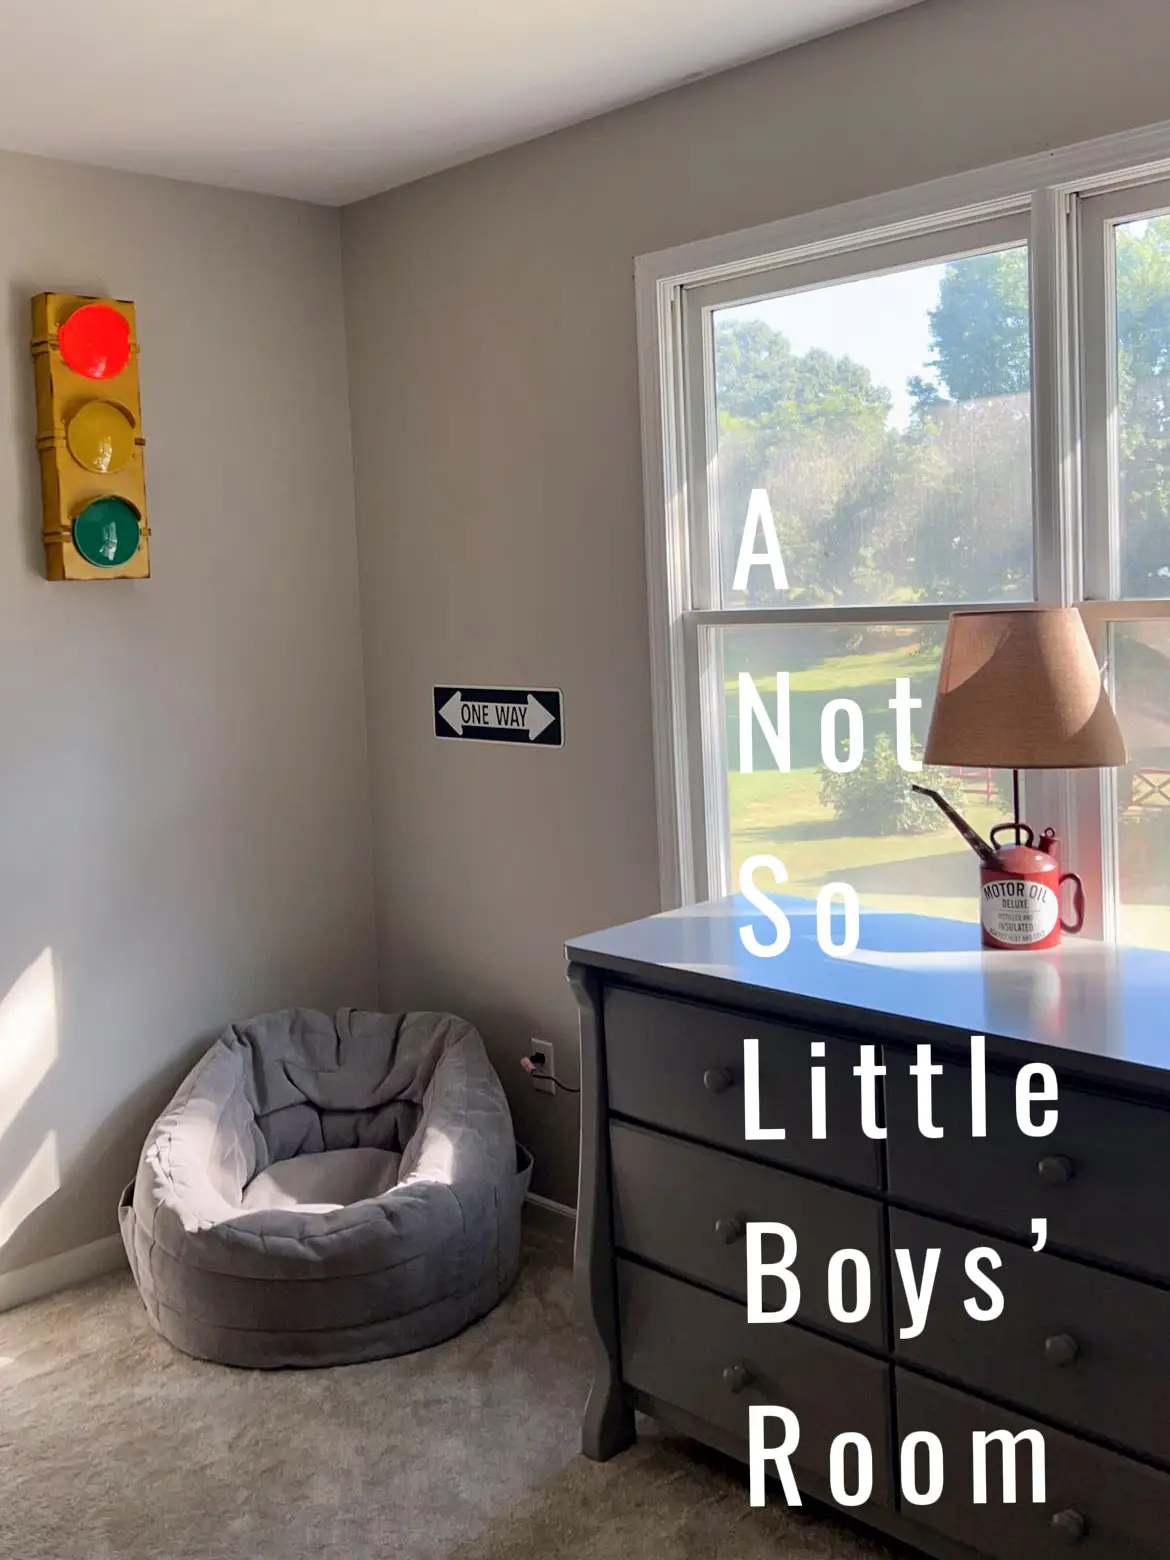 Boys Bedroom Ideas - VisionBedding  Bedroom themes, Fishing bedroom,  Bedroom diy